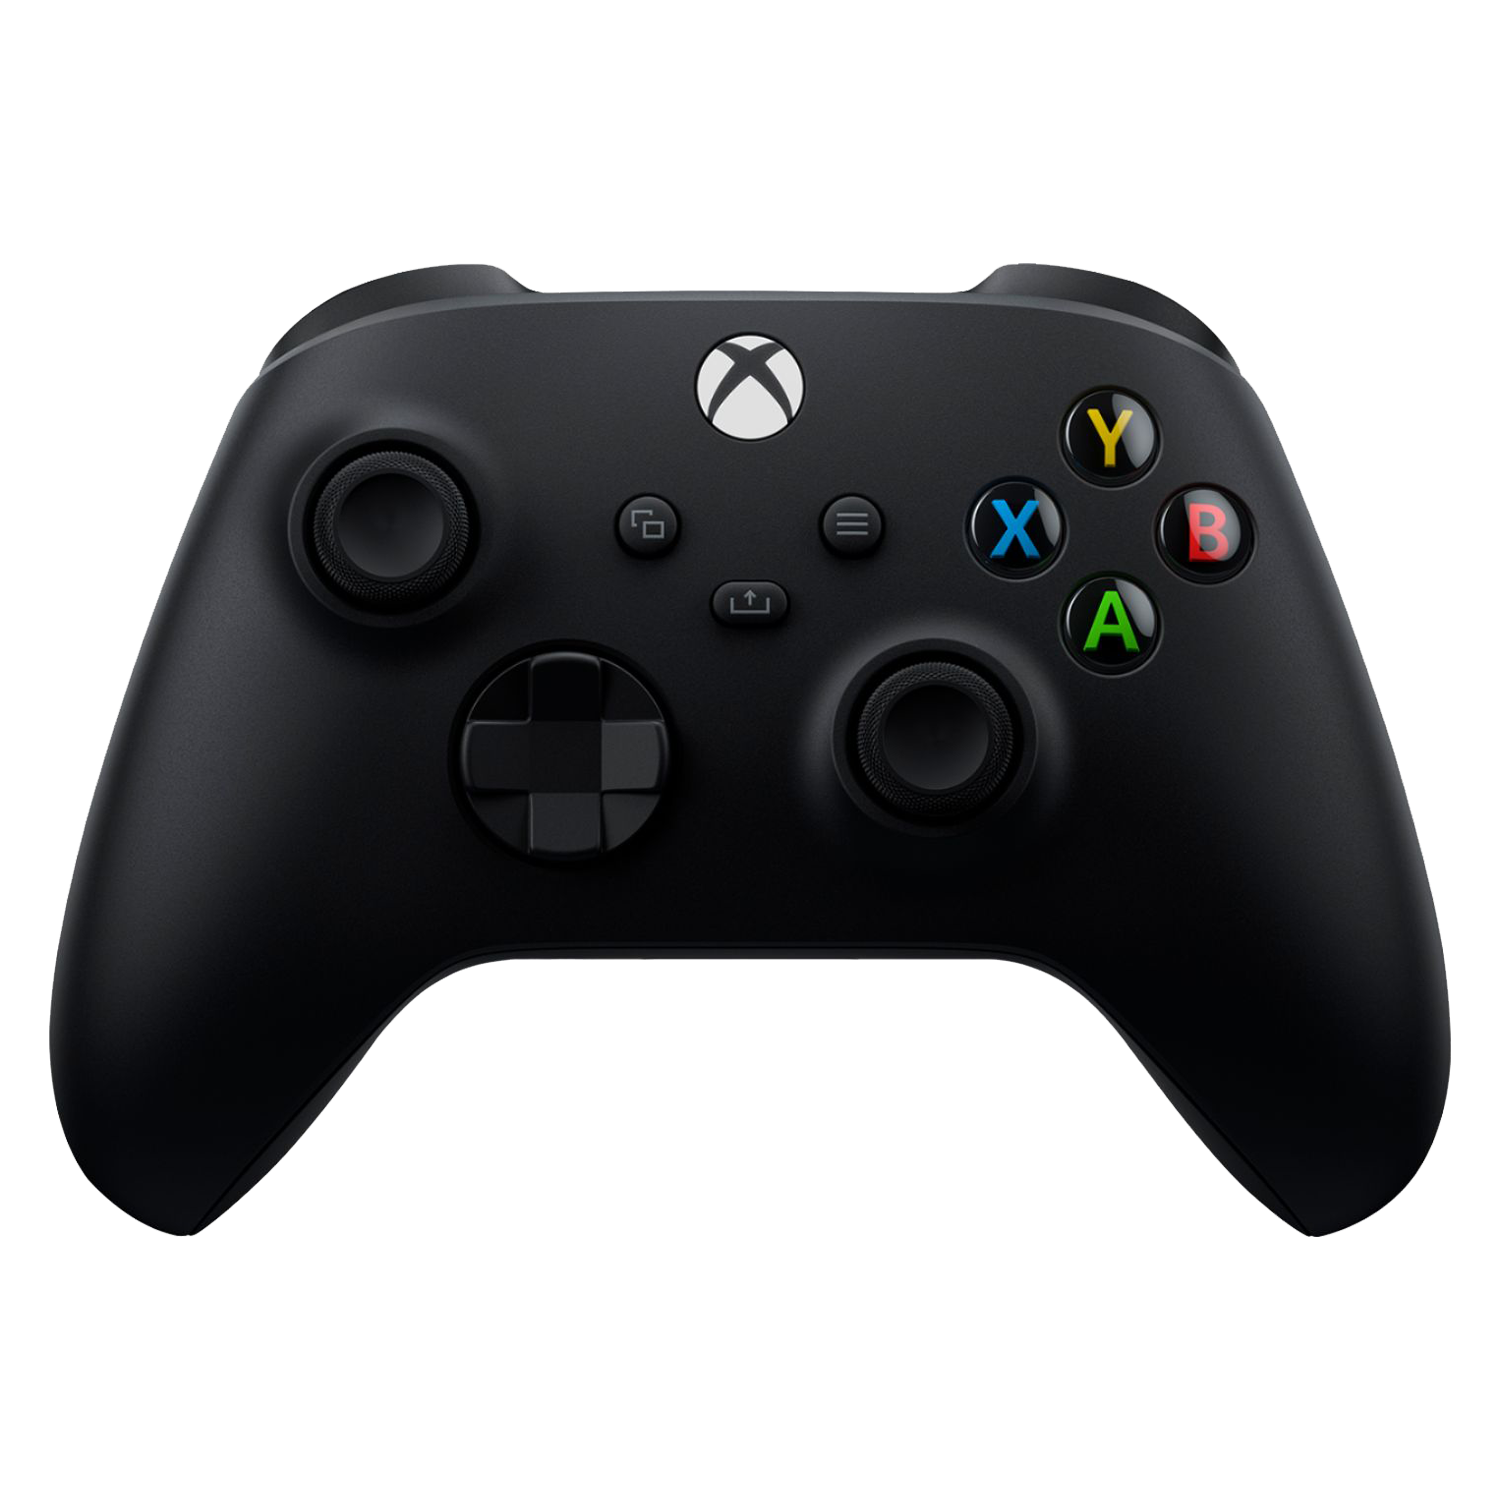 Console Microsoft Xbox One Series X 1TB USA - Preto (Caixa Danificada)